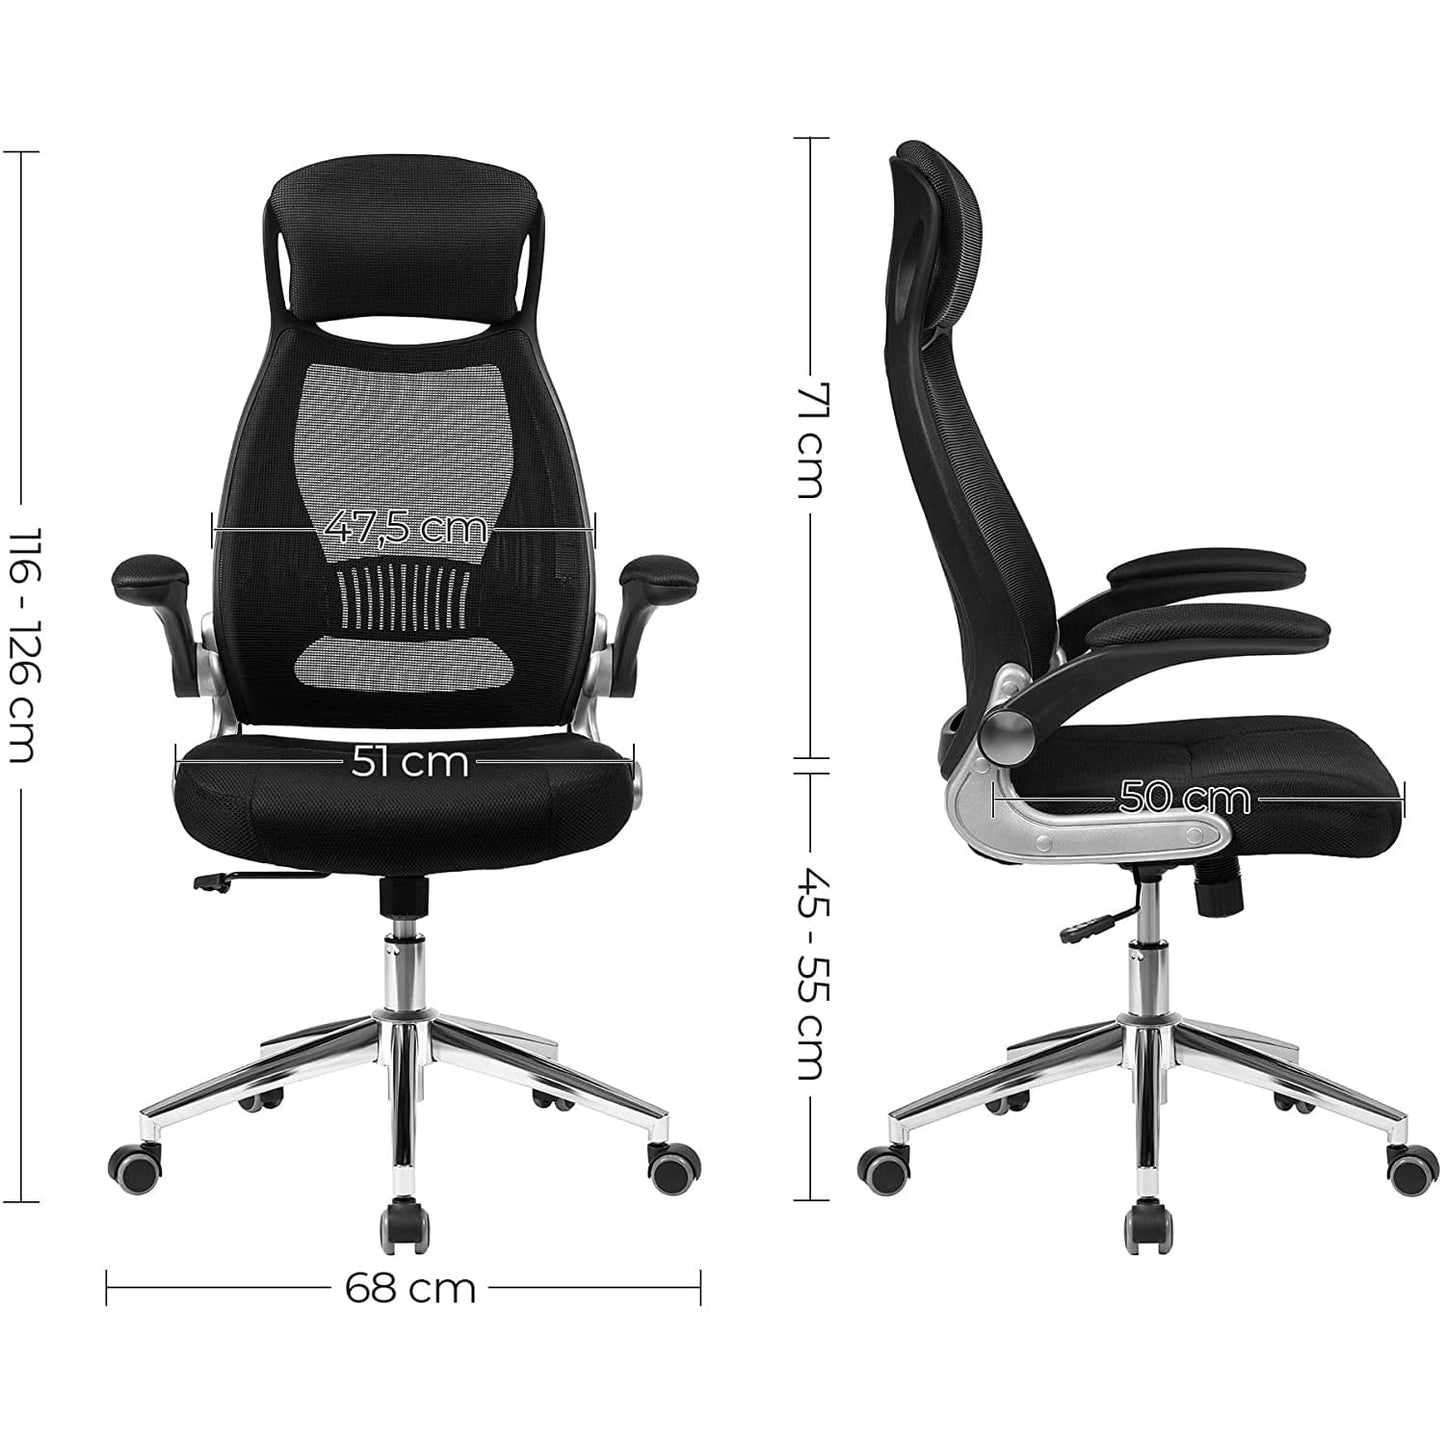 Silla - Comprar silla escritorio, Silla giratoria ergonómica, Silla de oficina, SONGMICS, Soporta 120 kilos, 1